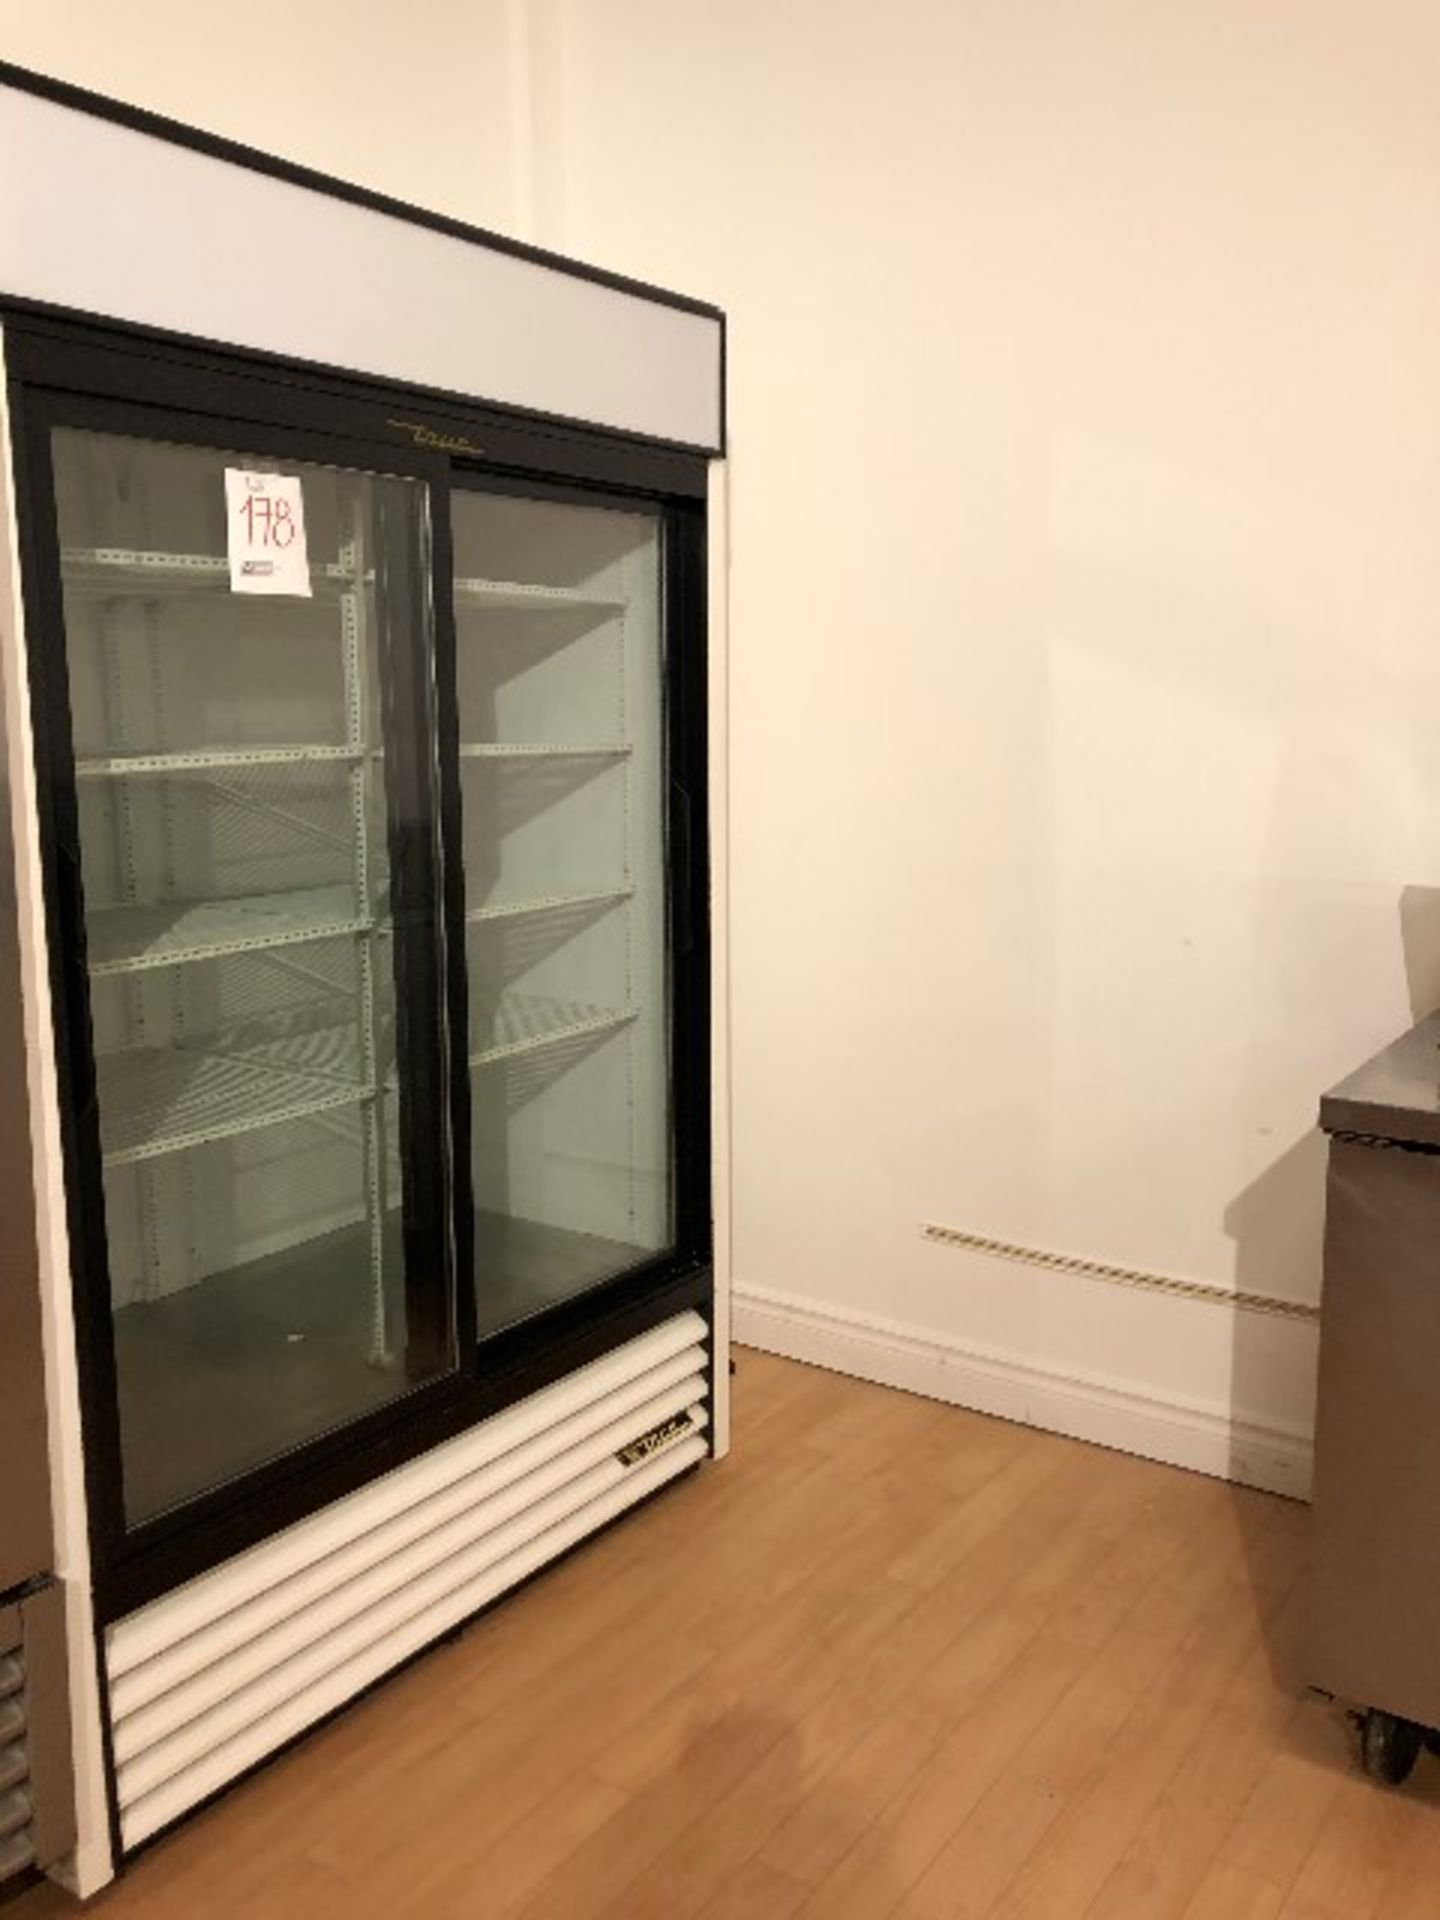 True GDM-45-LD refrigerator, dual sliding doors, W.51” - Image 2 of 2